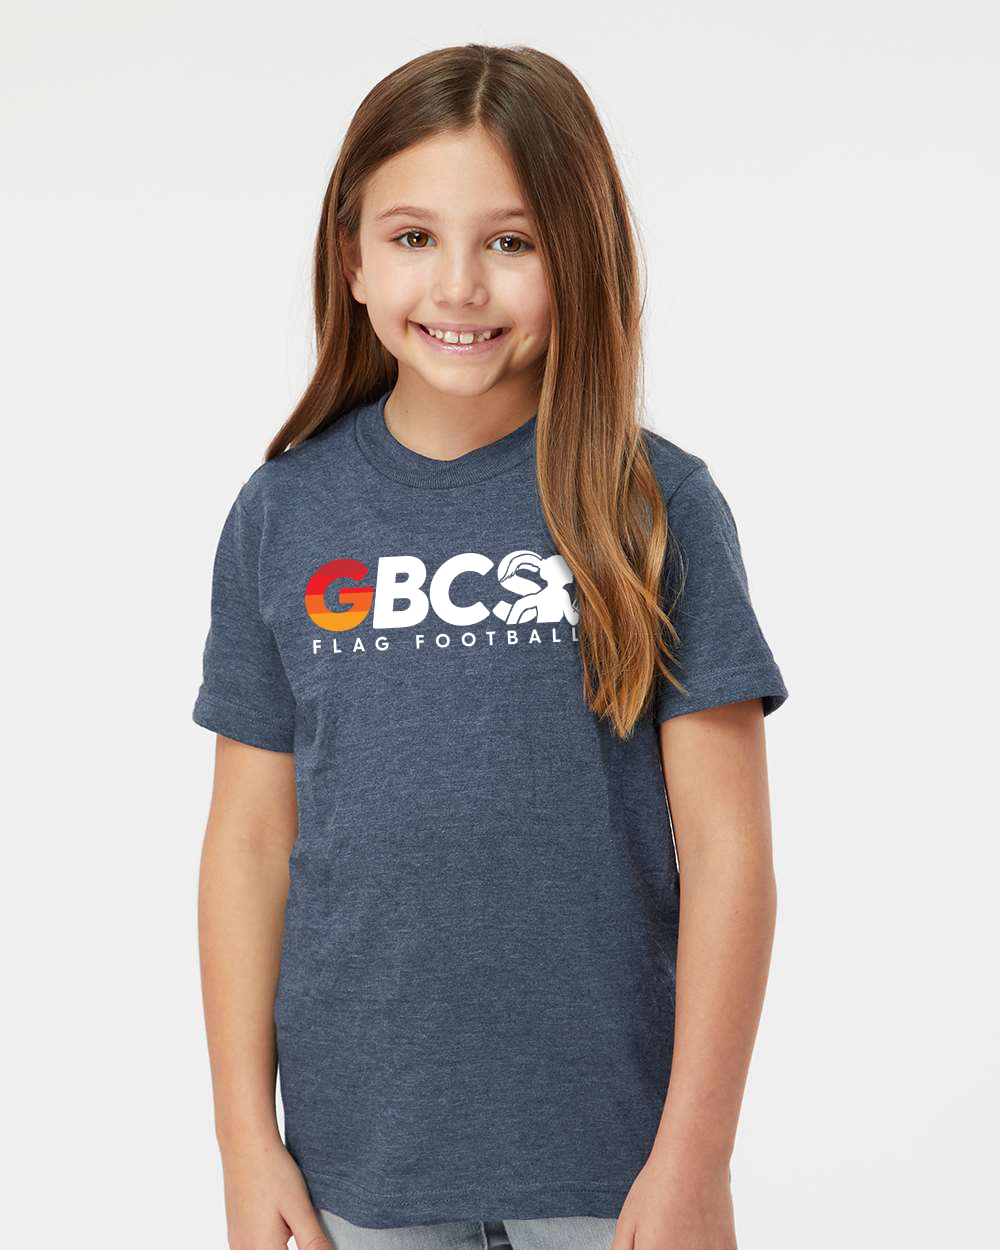 GBCS Youth T-Shirt